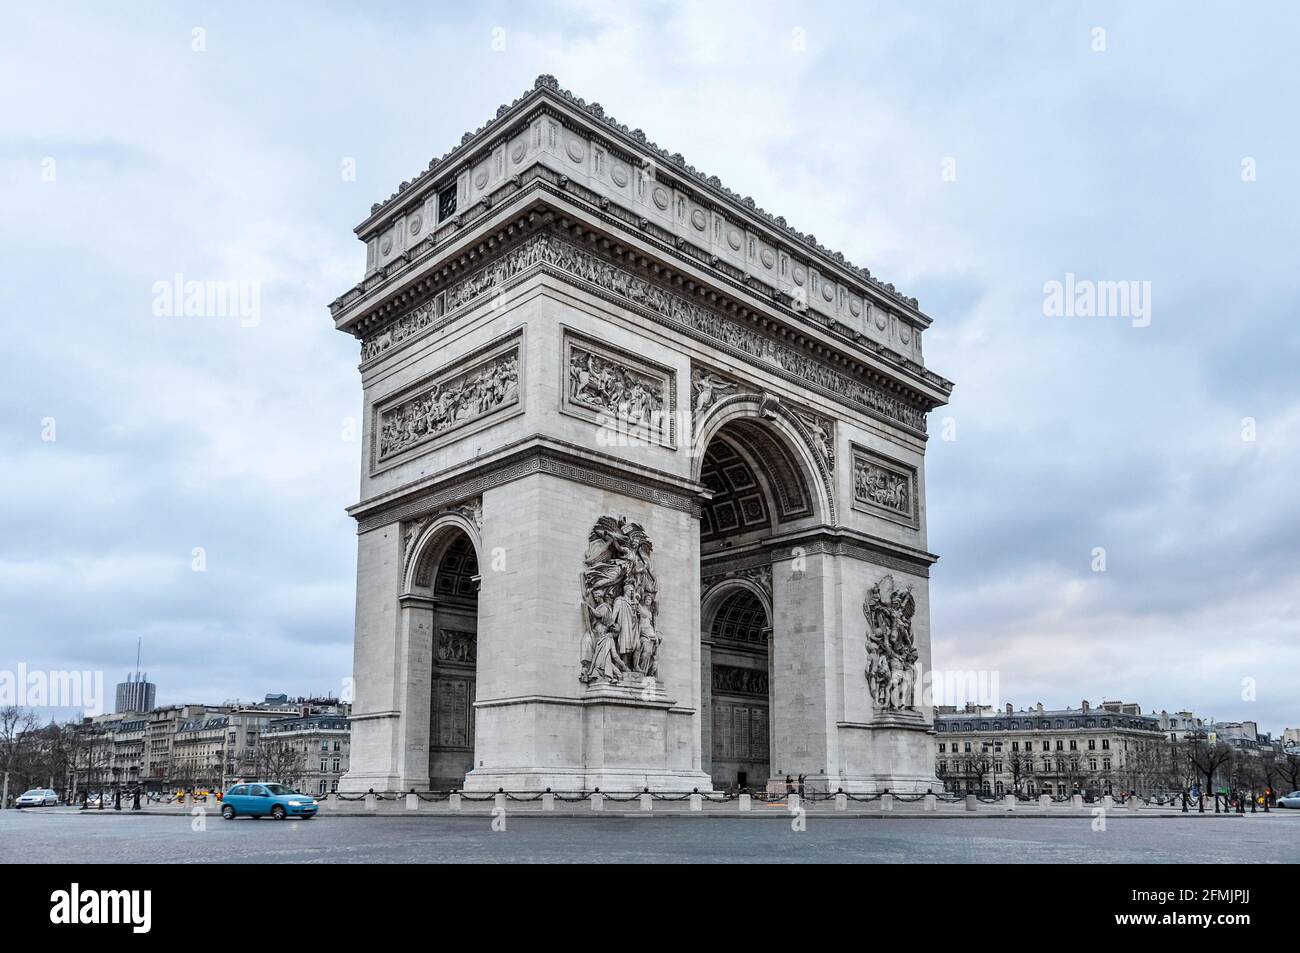 The Arc de Triomphe in Paris, France Stock Photo